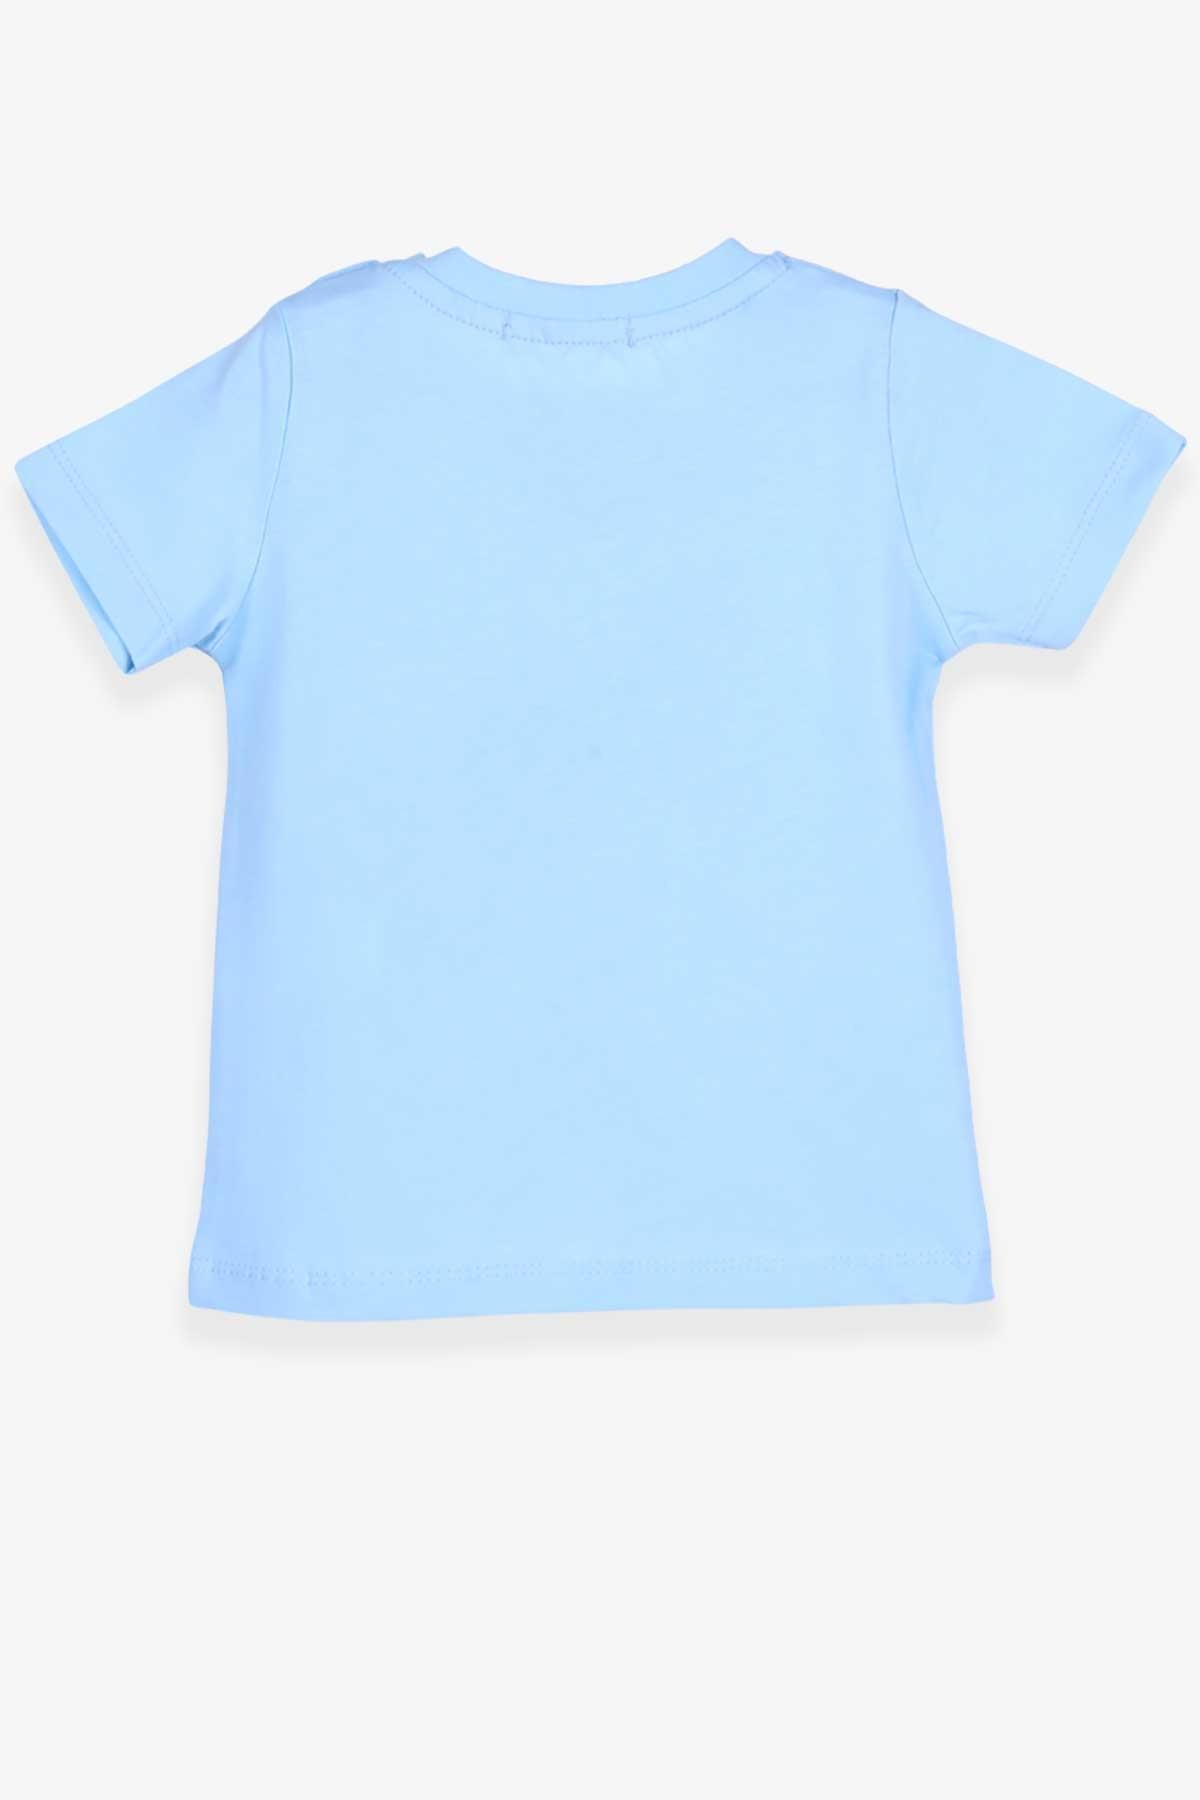 Erkek Bebek Tişört Bukalemun Baskılı Açık Mavi 9 Ay-2 Yaş - Yazlık Bebek  Tişörtleri | Breeze